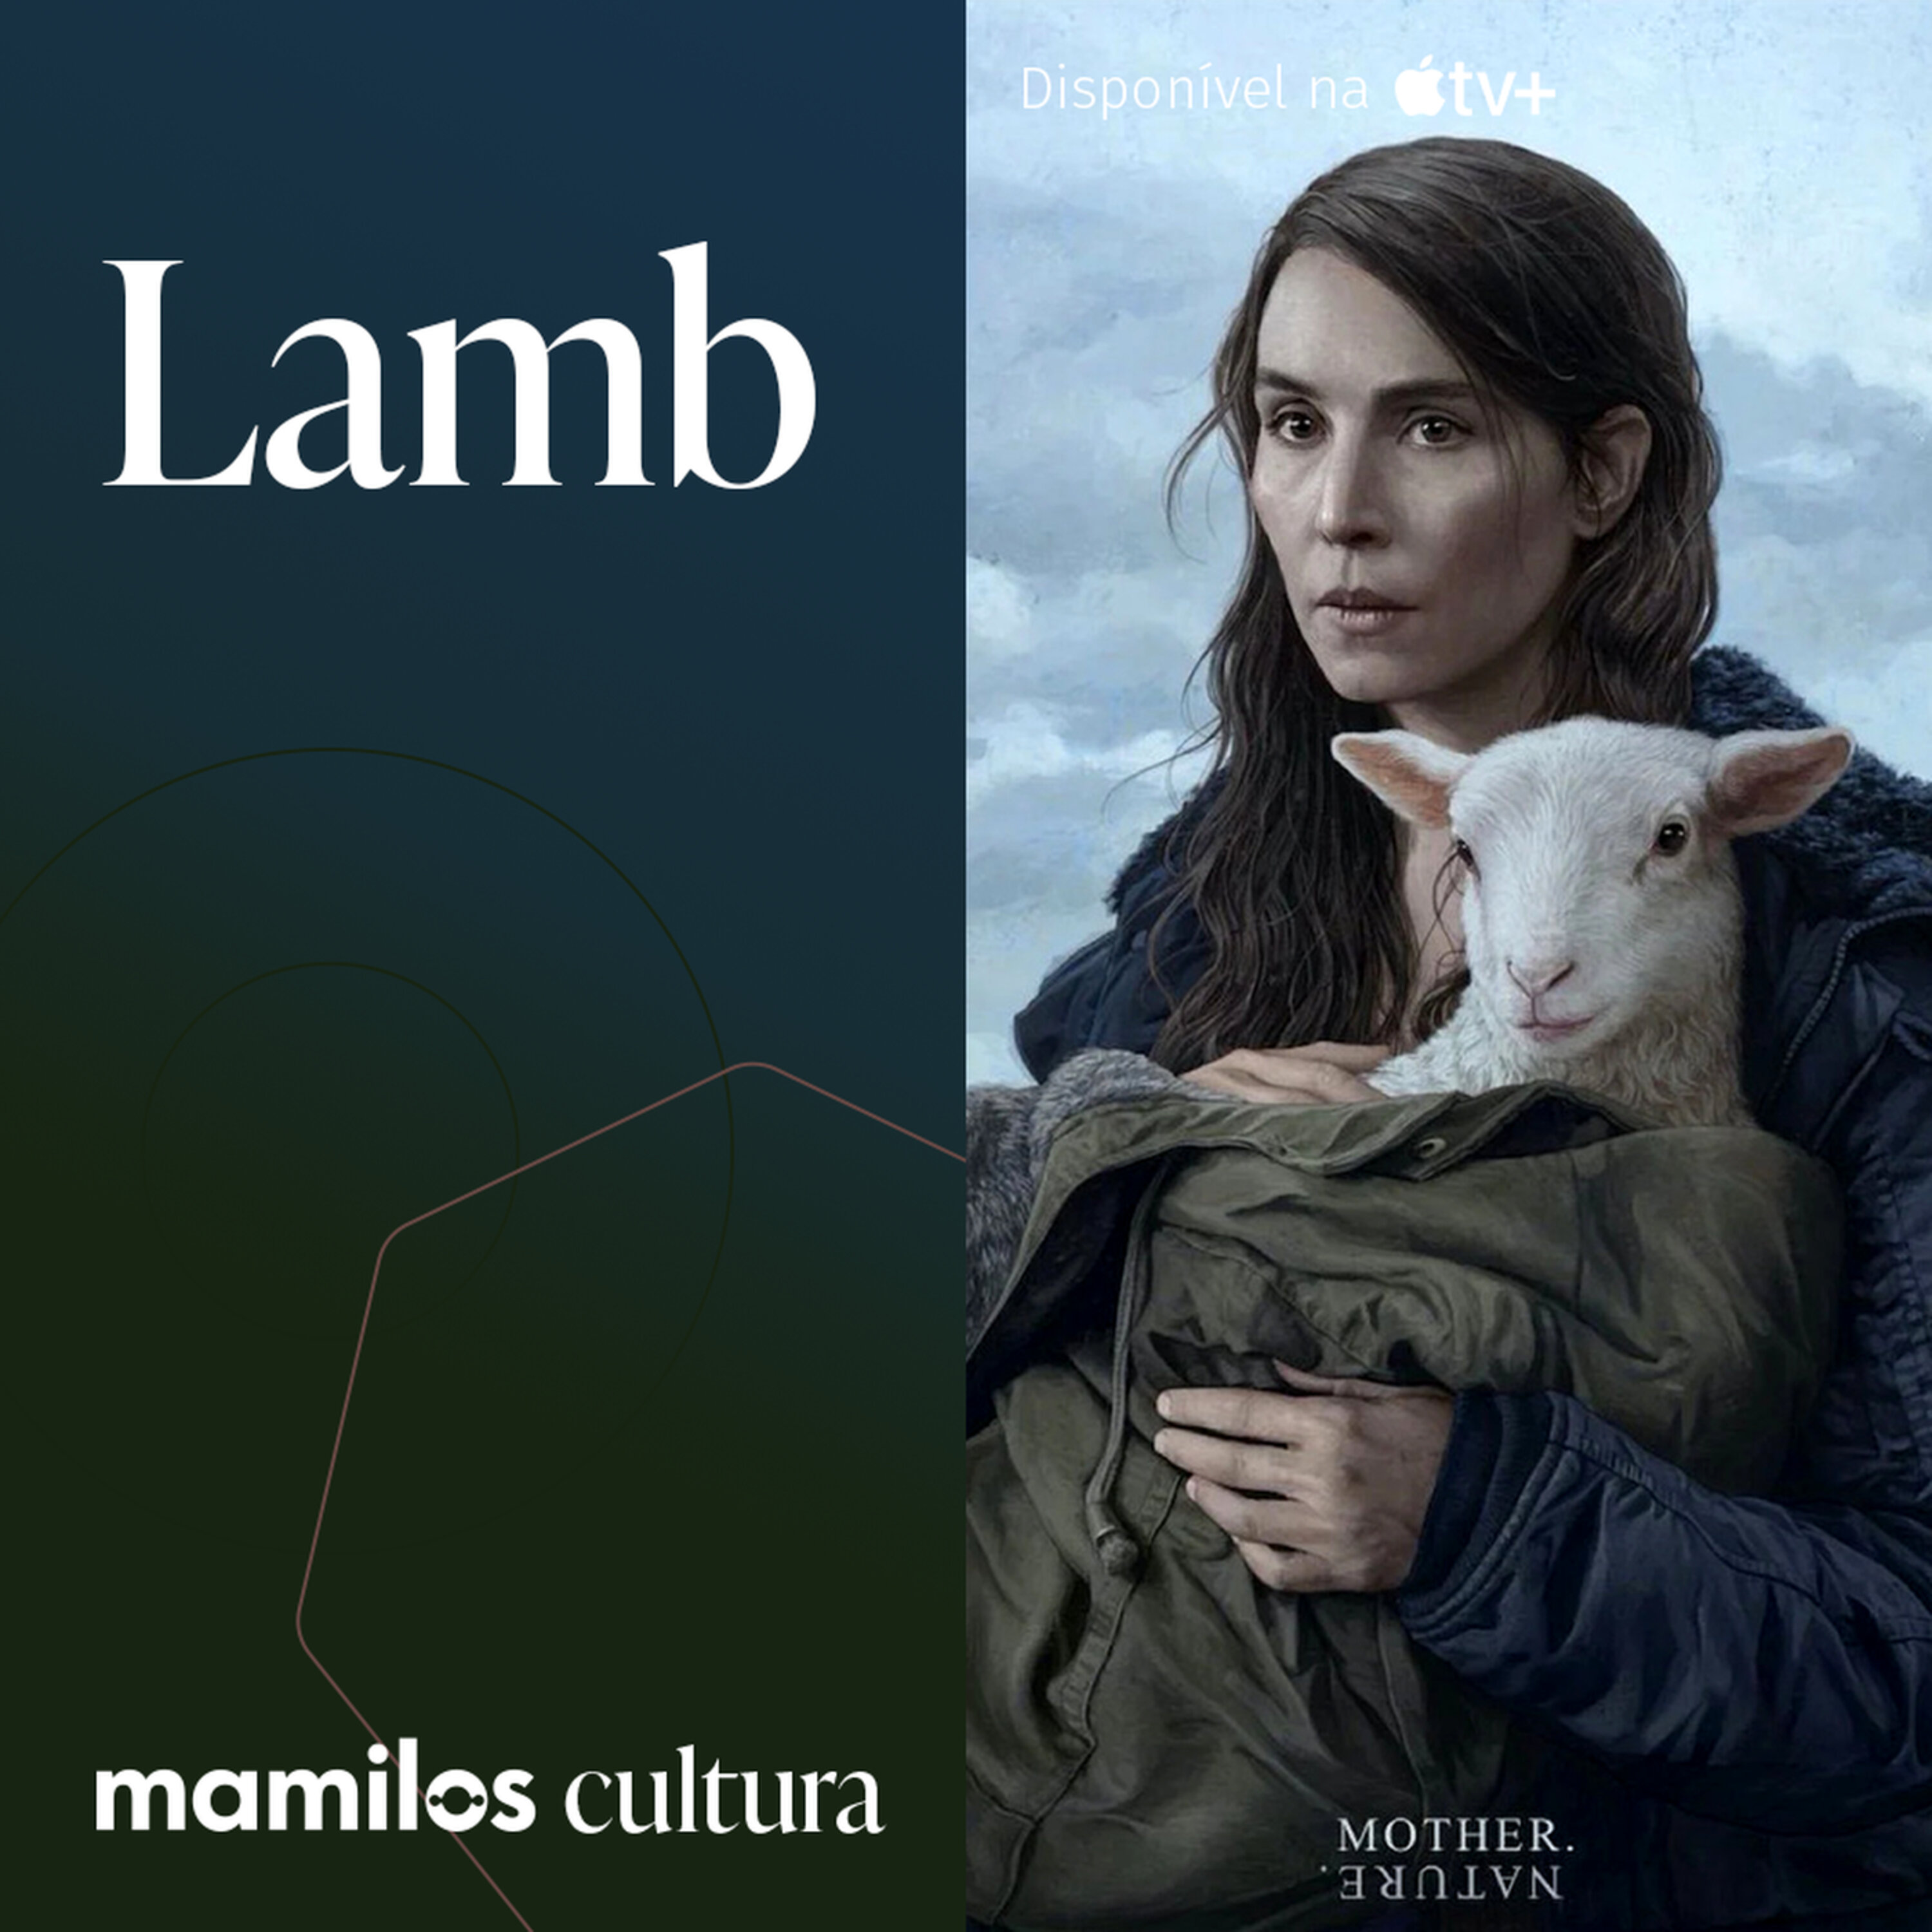 Mamilos Cultura 64: Filme “Lamb” - a força da natureza